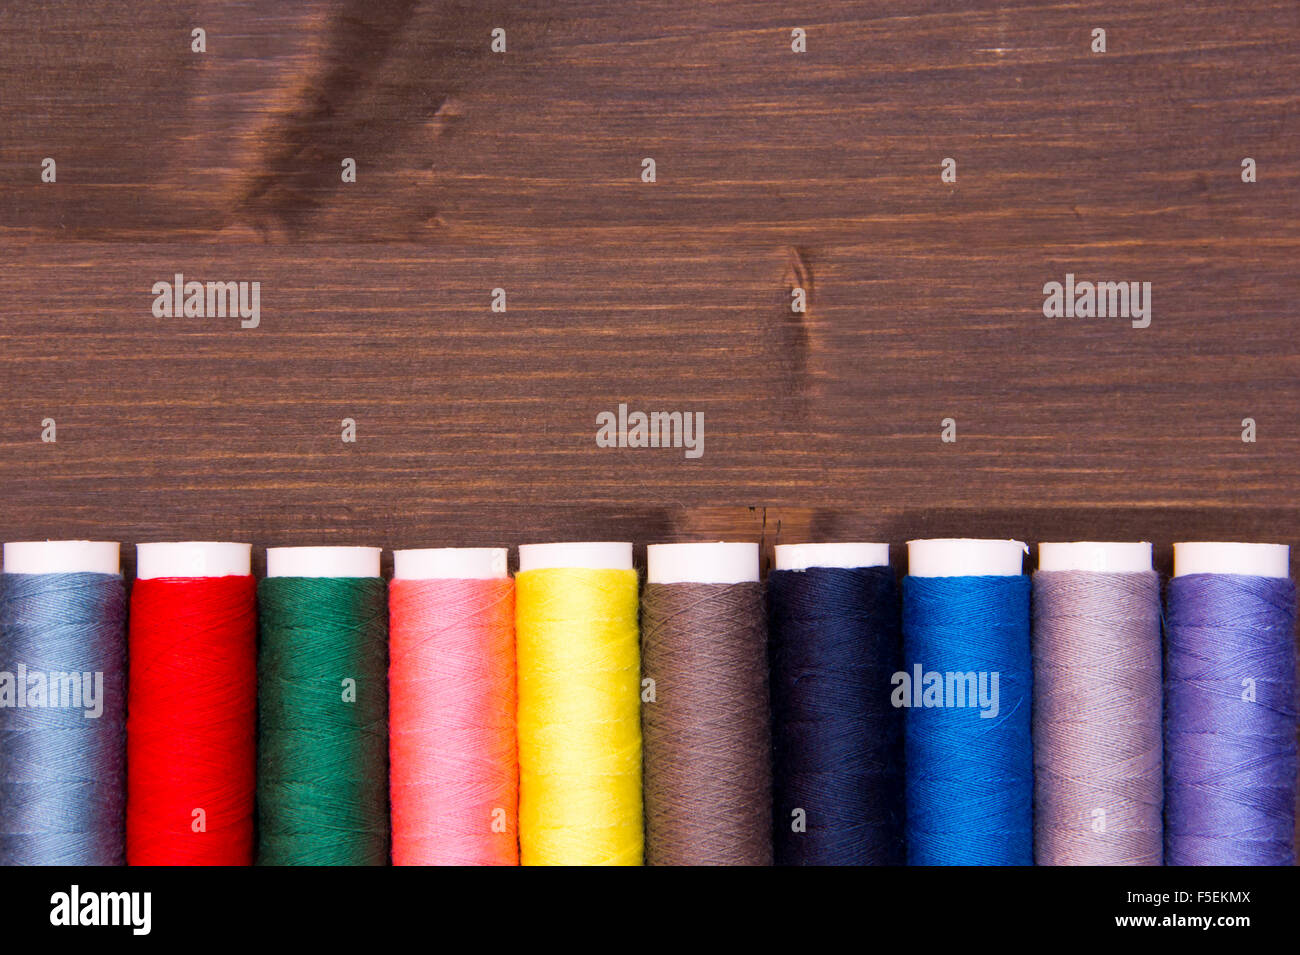 Rangée de fil à coudre de différentes couleurs sur la table en bois Banque D'Images